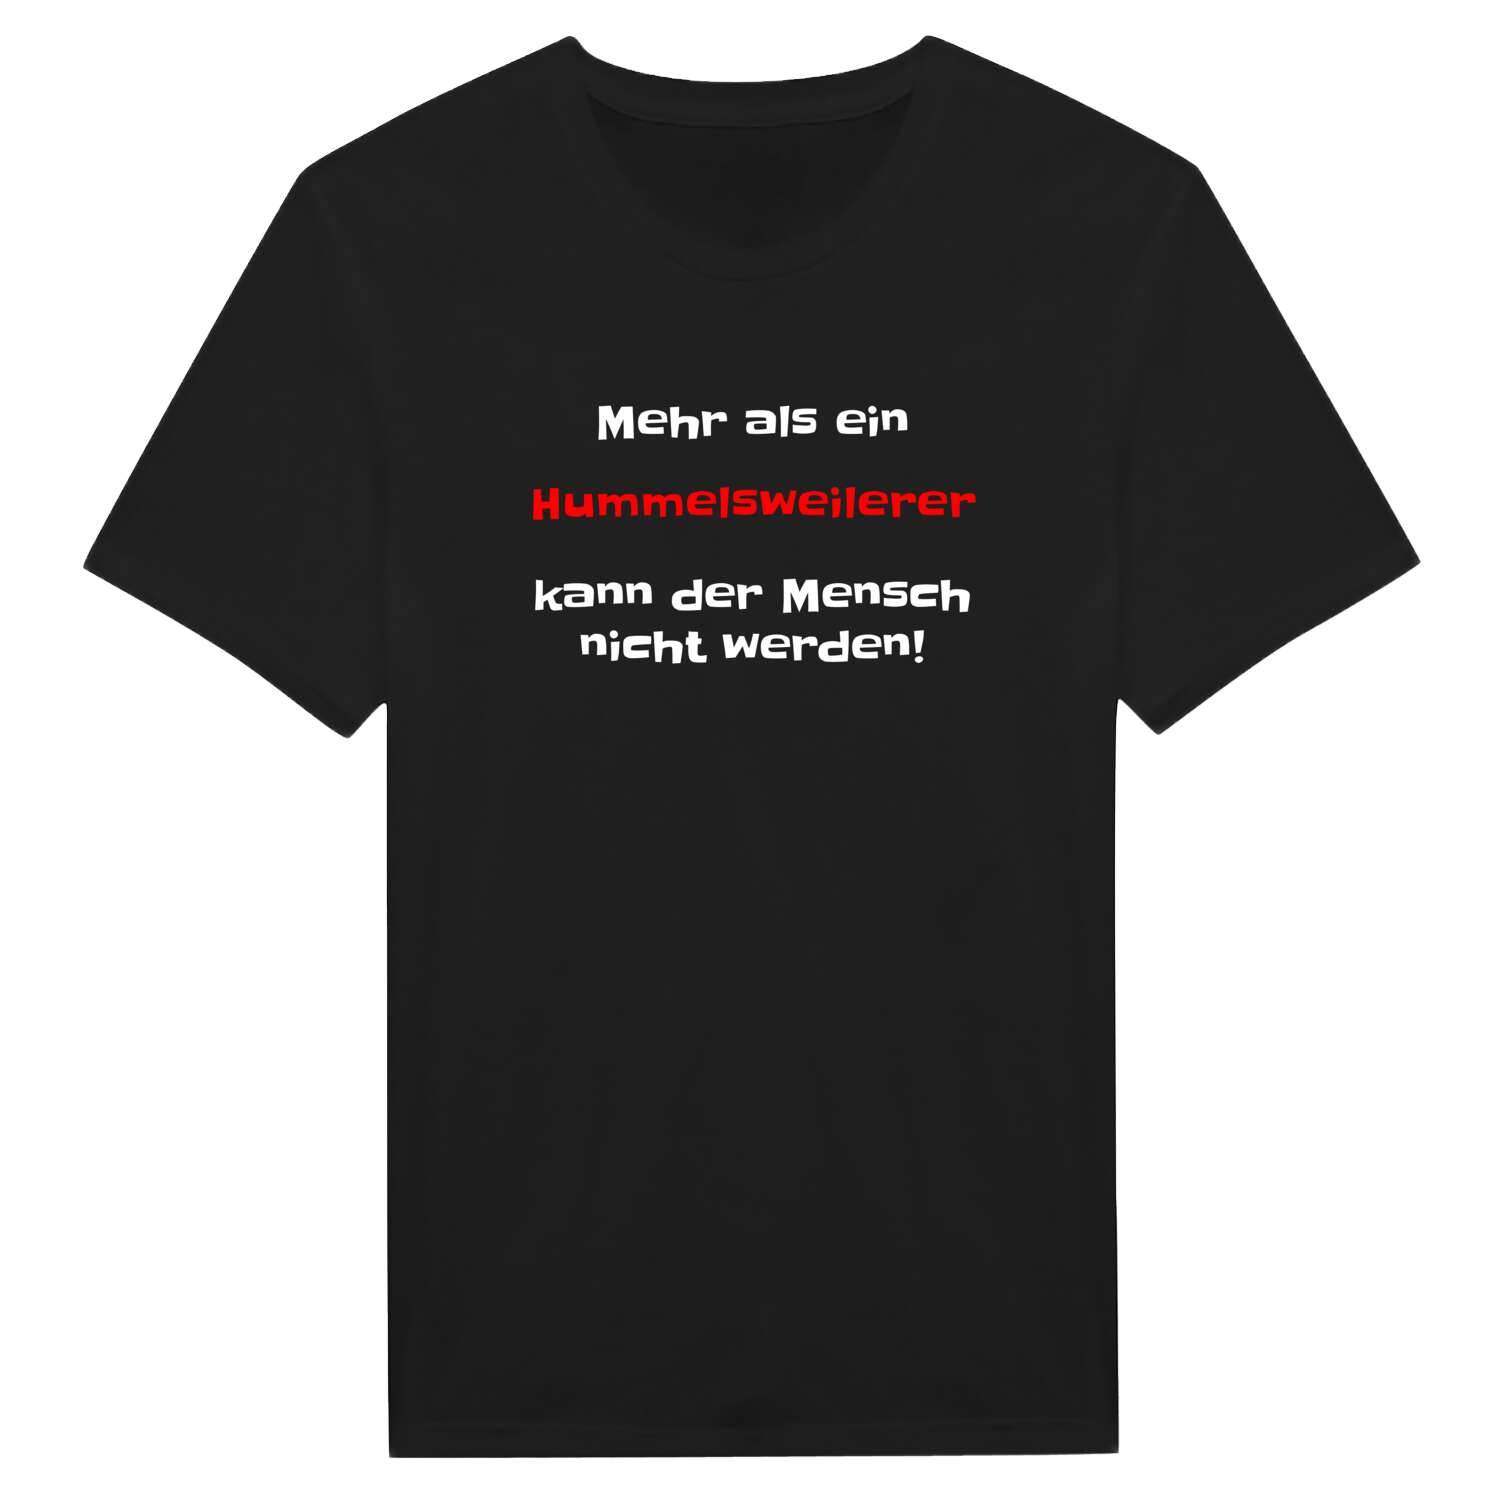 Hummelsweiler T-Shirt »Mehr als ein«